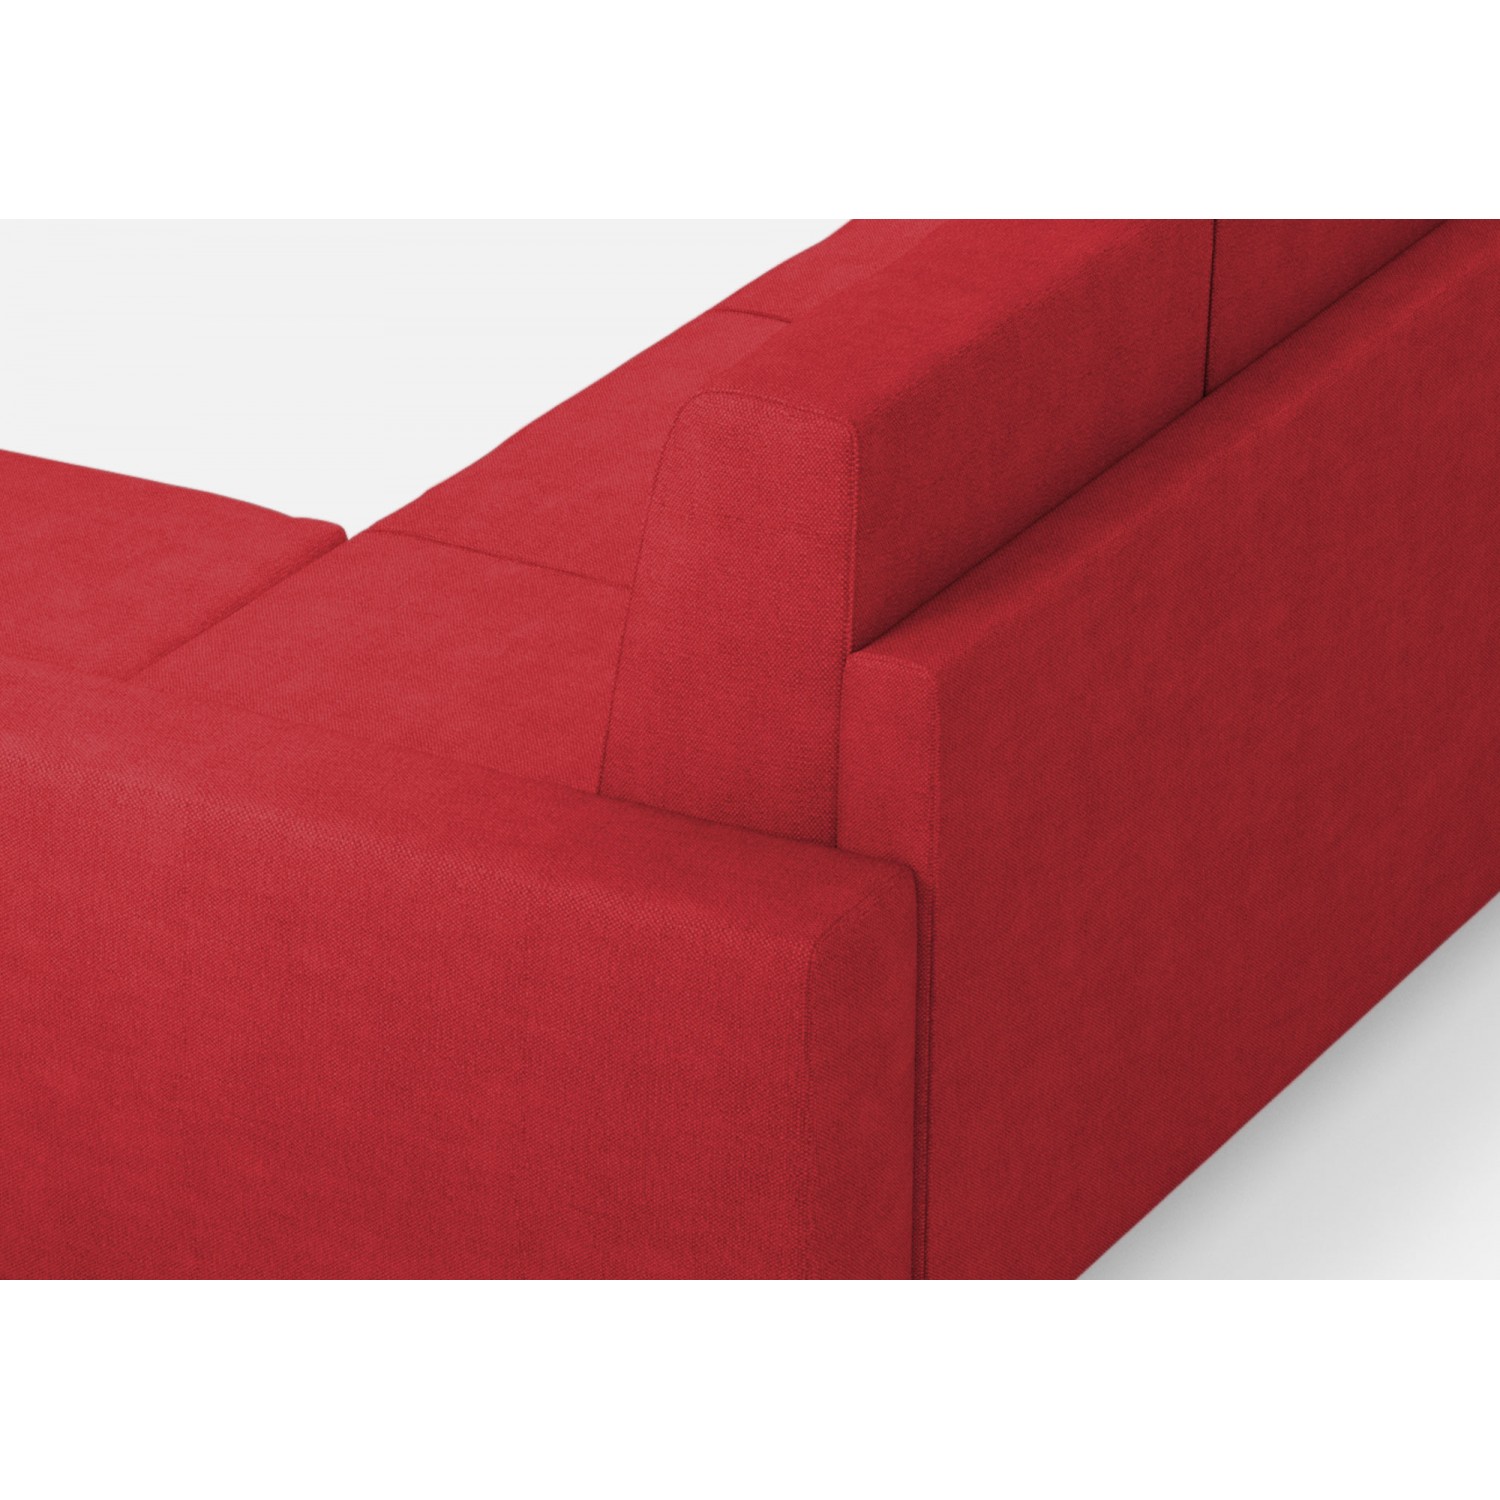 Ityhome Divano Sakar 3 posti (tre sedute da 60cm) + pouf misure esterne L.208 P.155 colore rosso